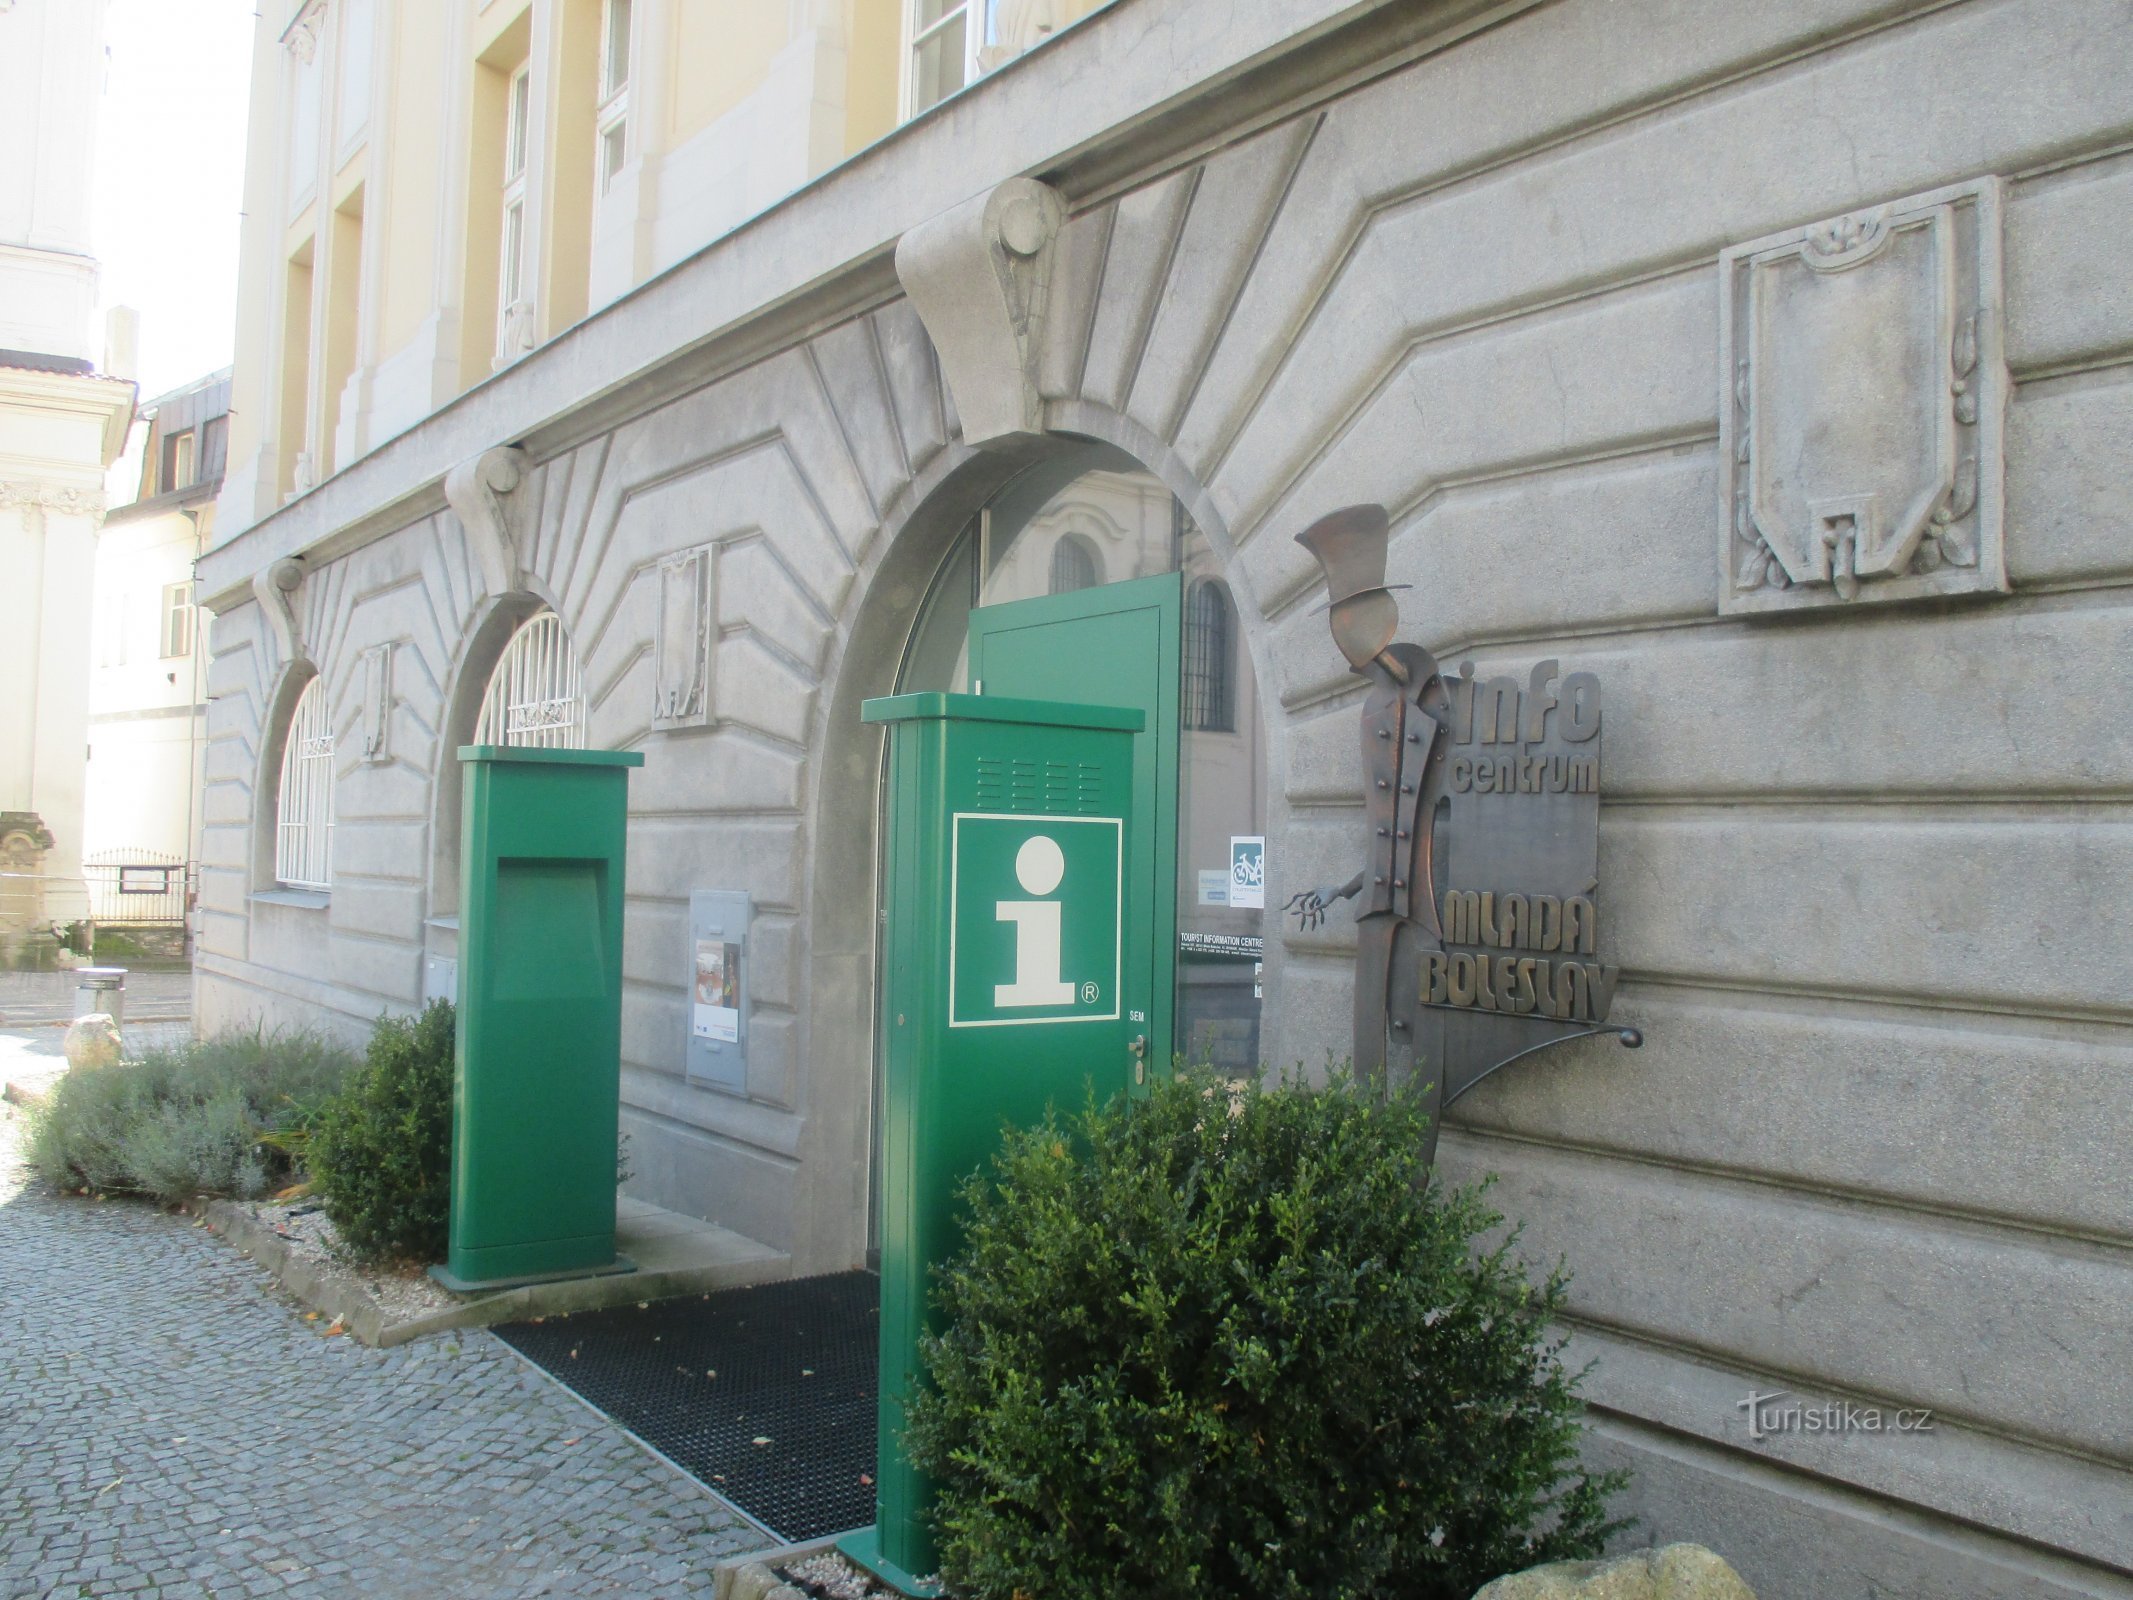 Mladá Boleslav - Information center